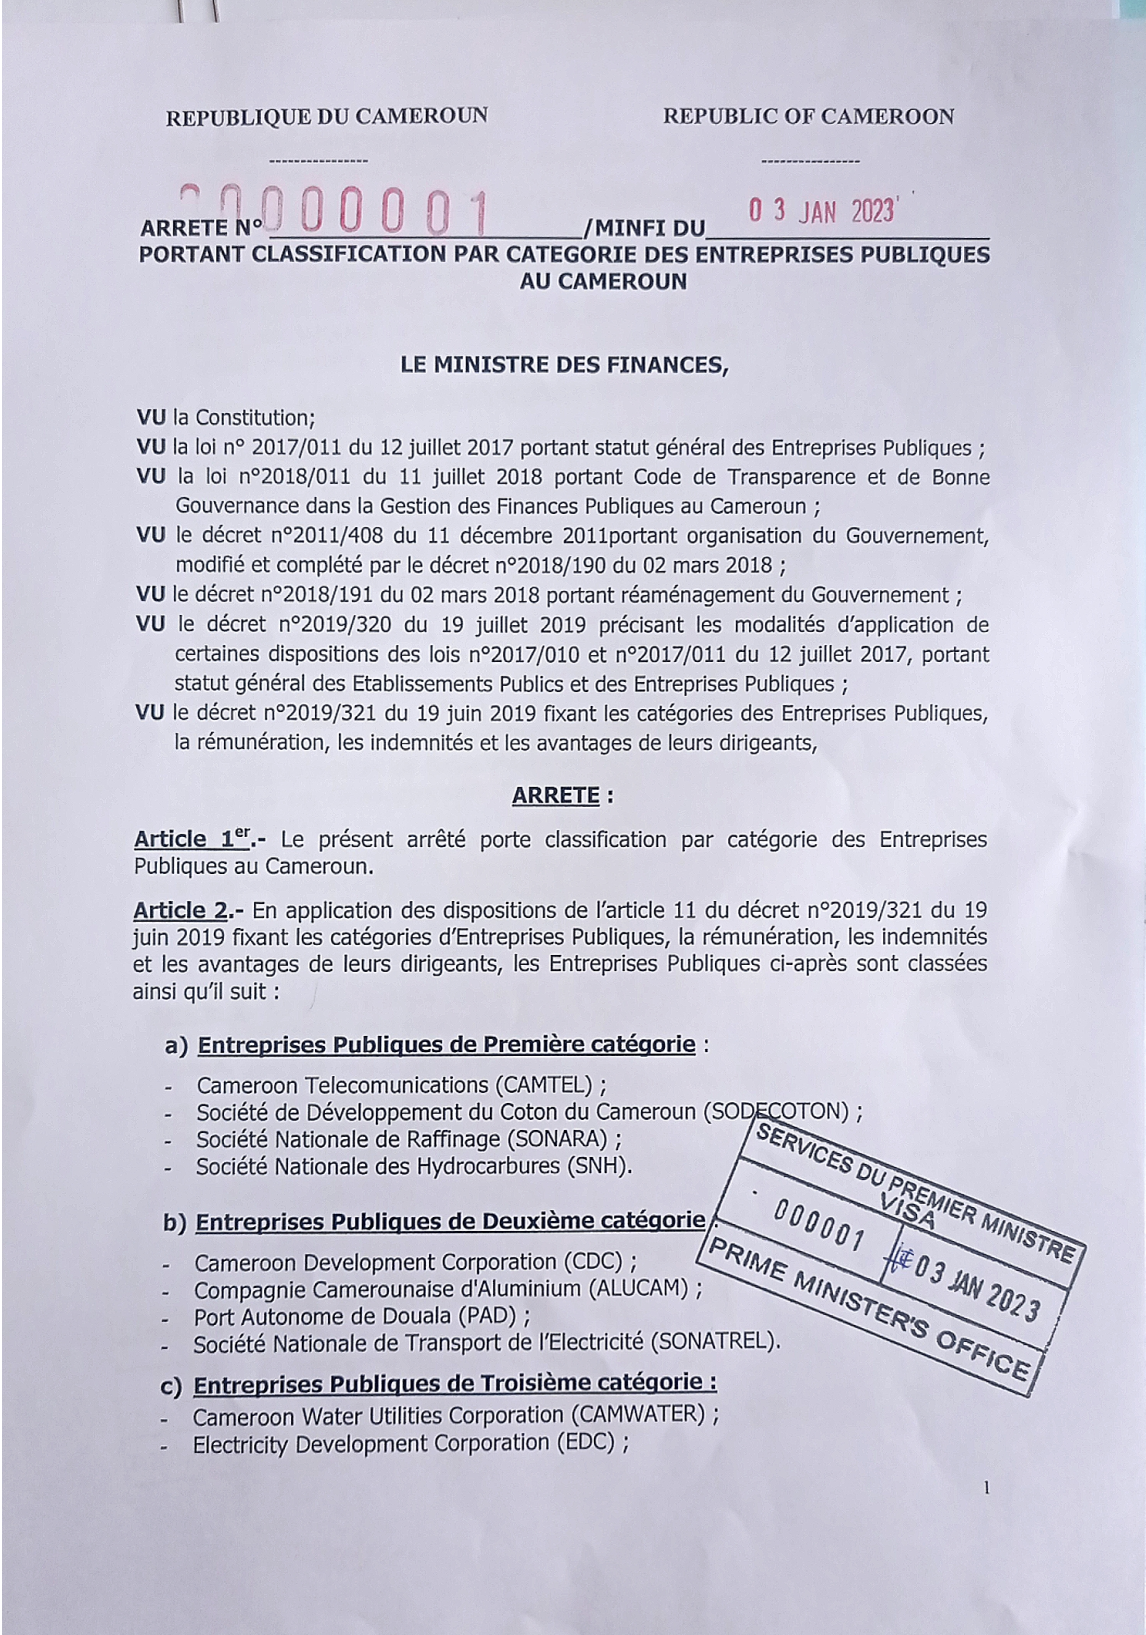 Classification des entreprises publiques au Cameroun